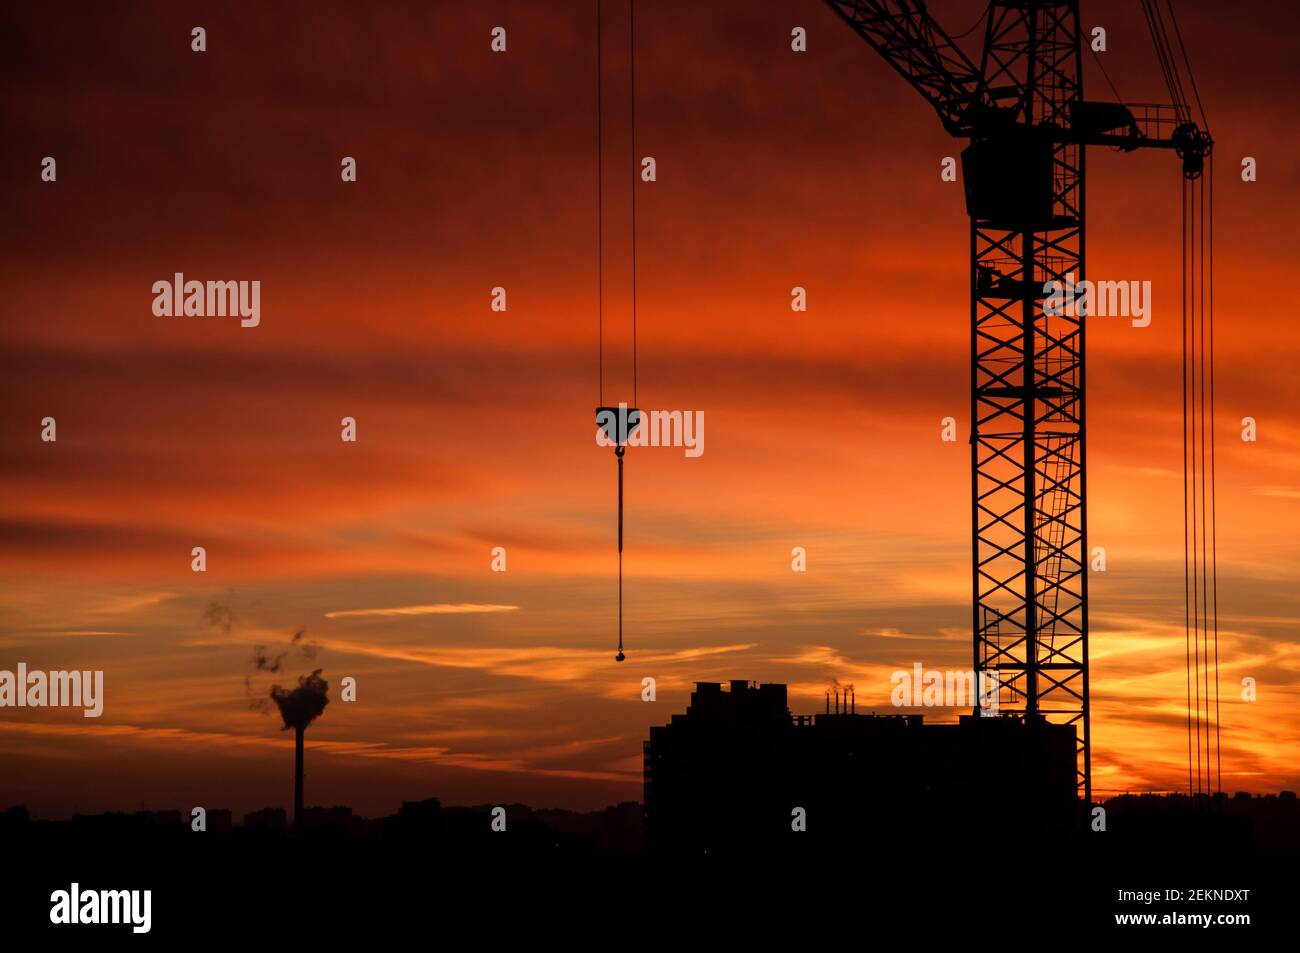 Silhouette de la grue de construction industrielle contre le ciel orangé du coucher du soleil Banque D'Images